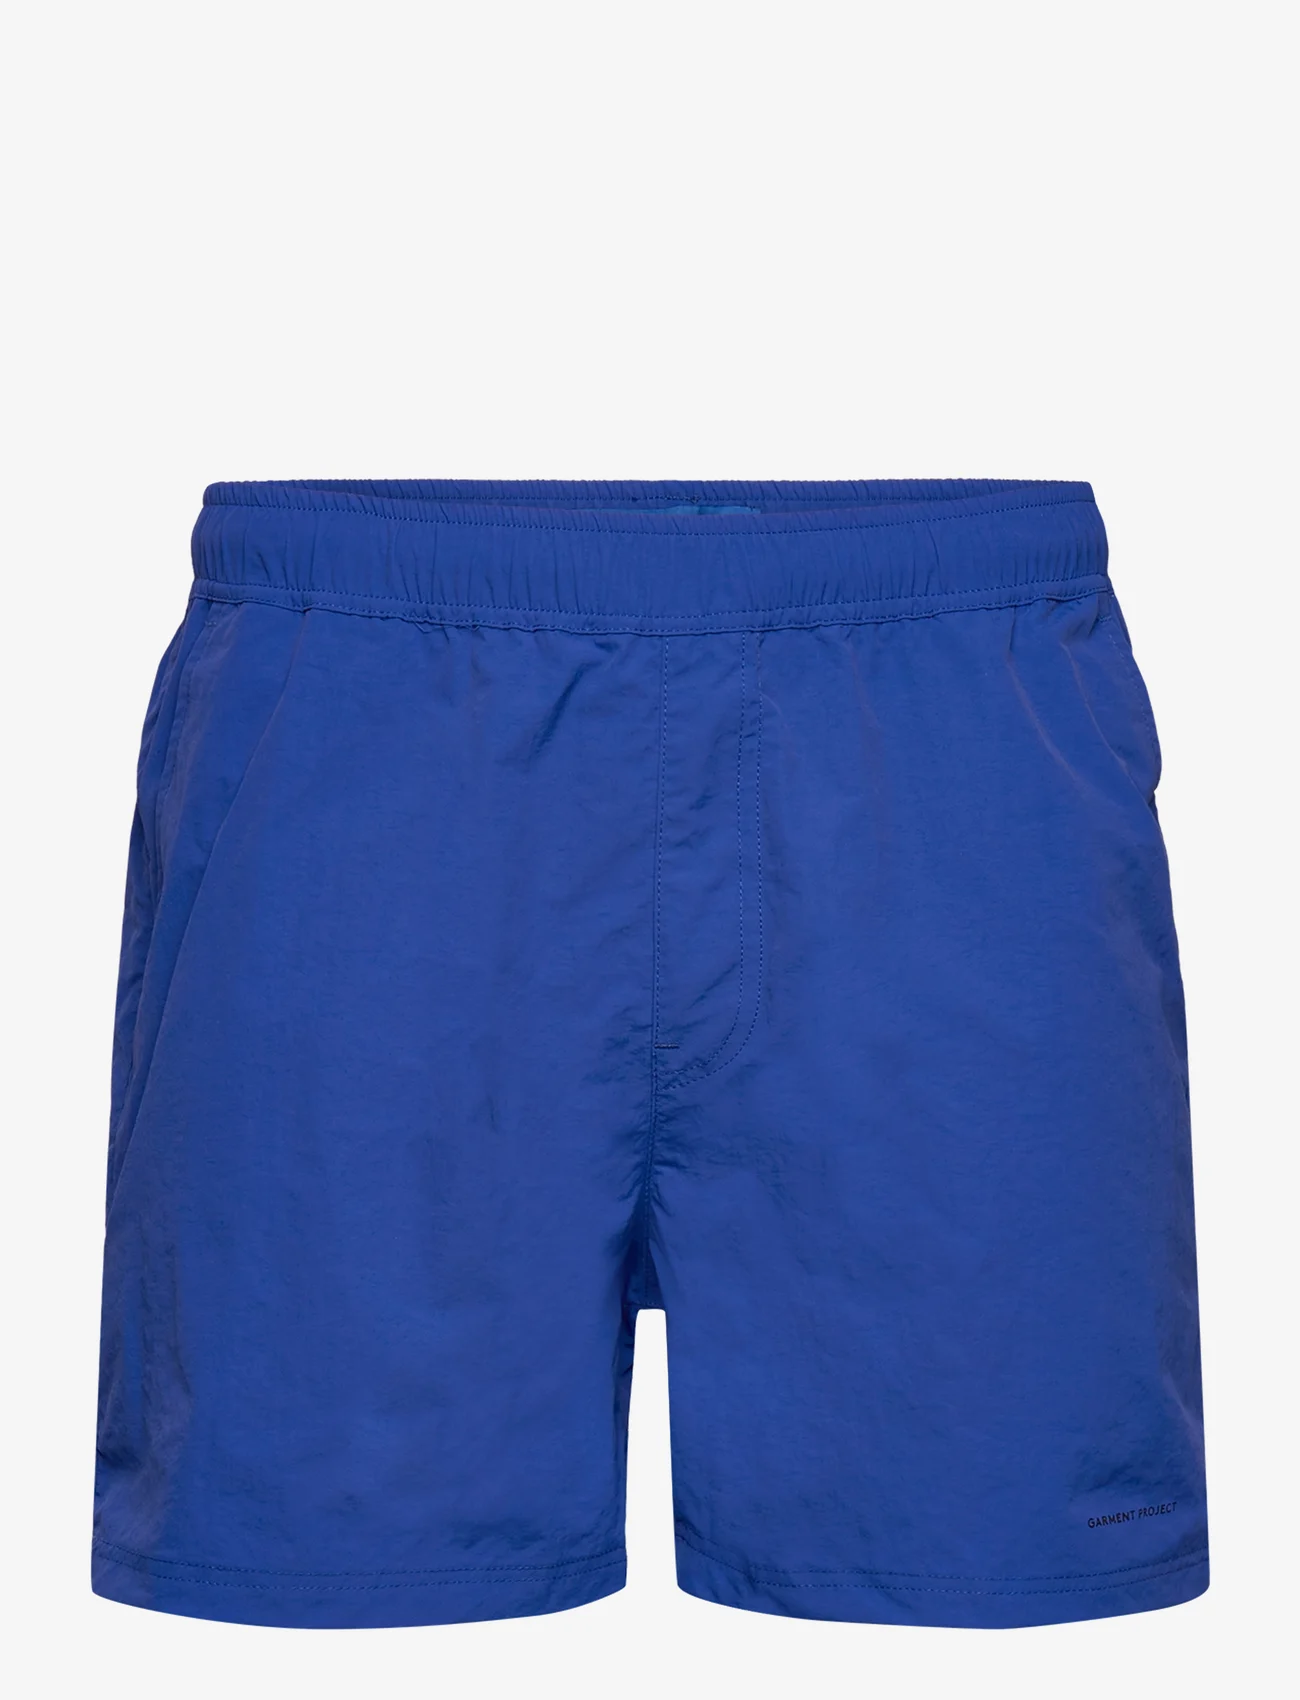 Garment Project - Tech Shorts - Blue - badbyxor - blue - 0